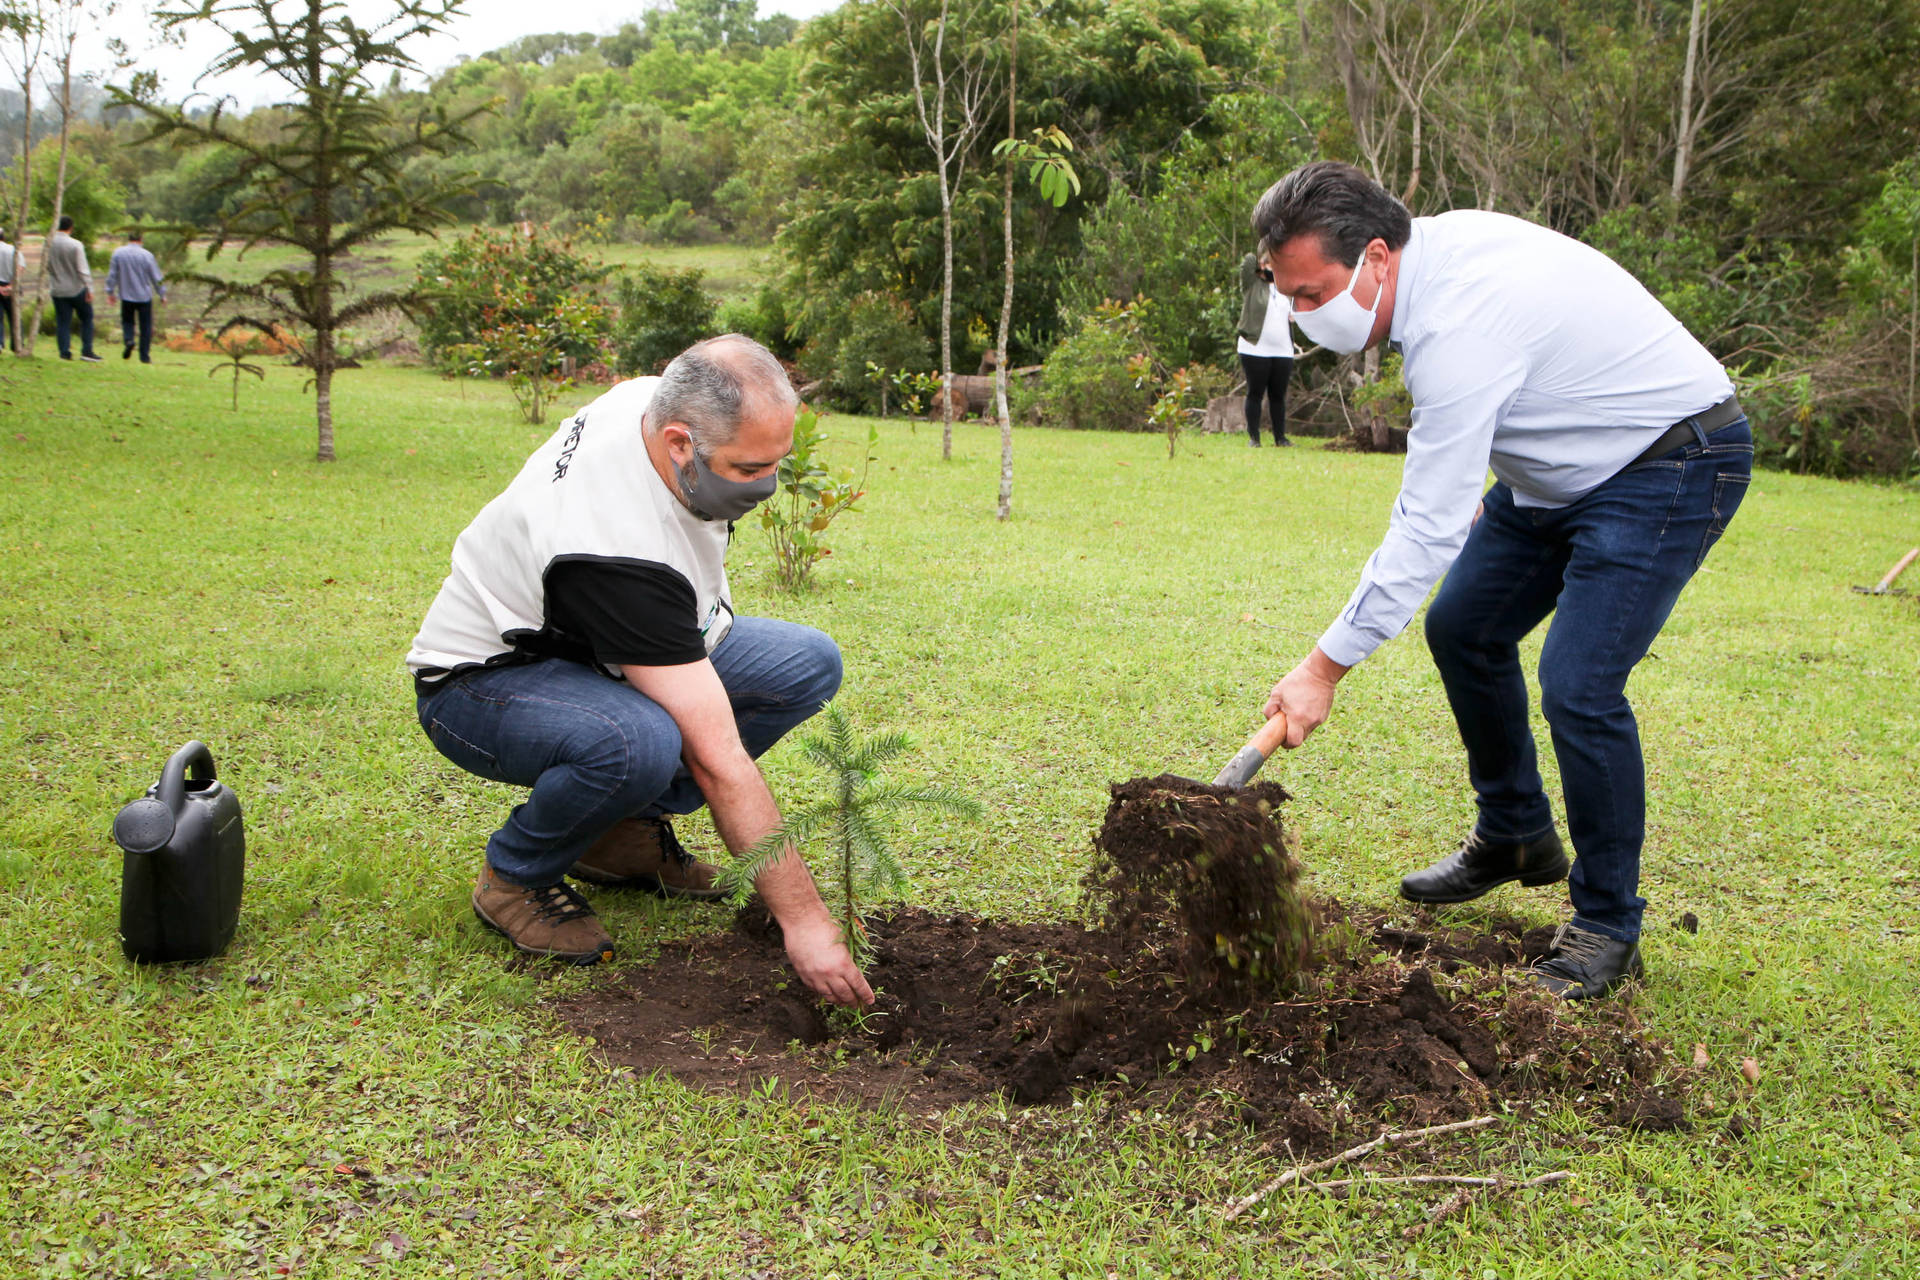 Estado reforça o reflorestamento com plantio de 46 mil mudas de araucária